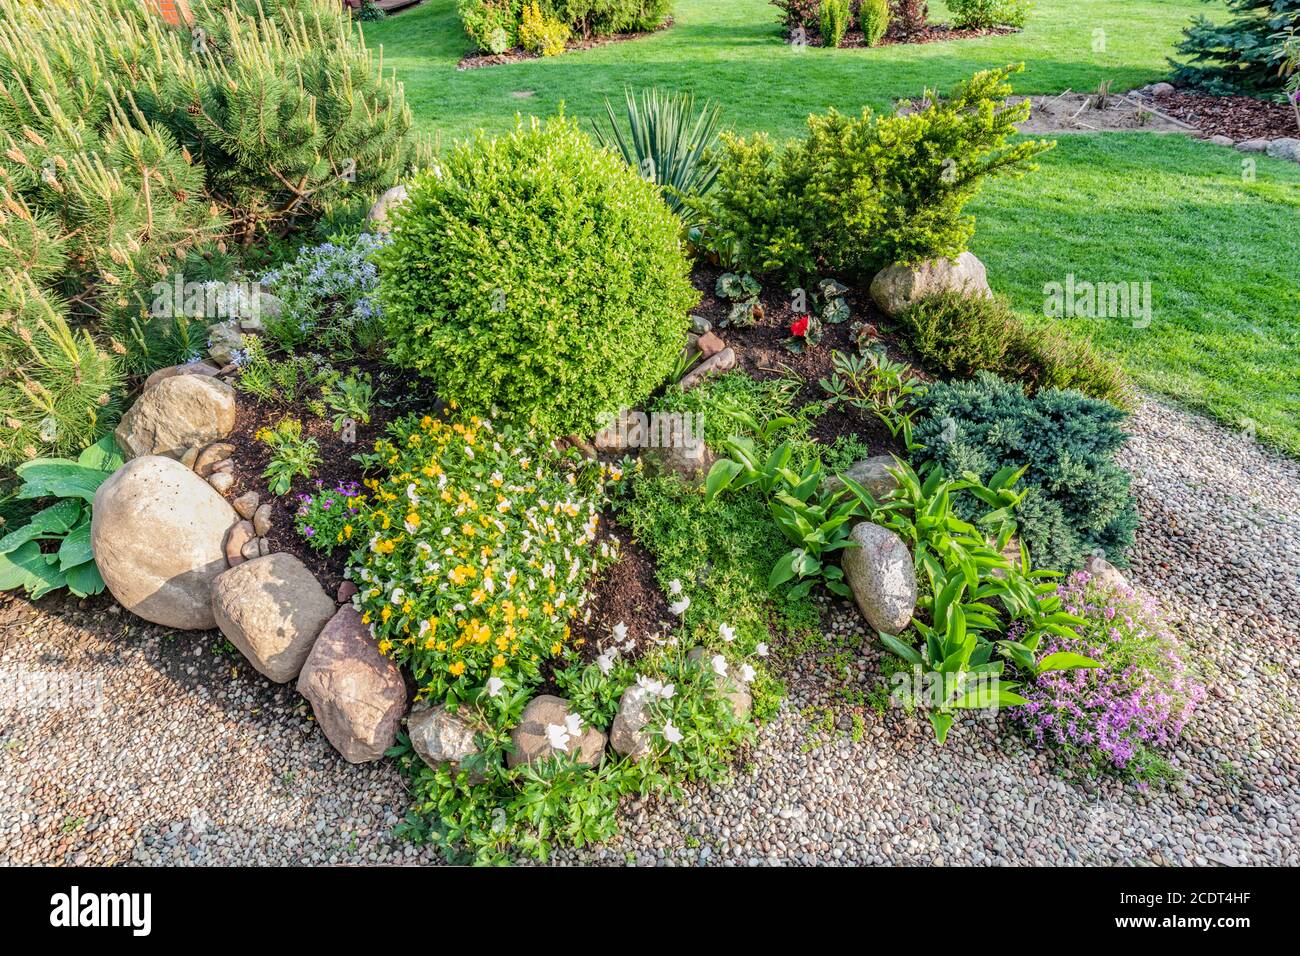 Jardín veraniego con plantas verdes, rocas, flores en macizos de flores, césped de mown. Foto de stock